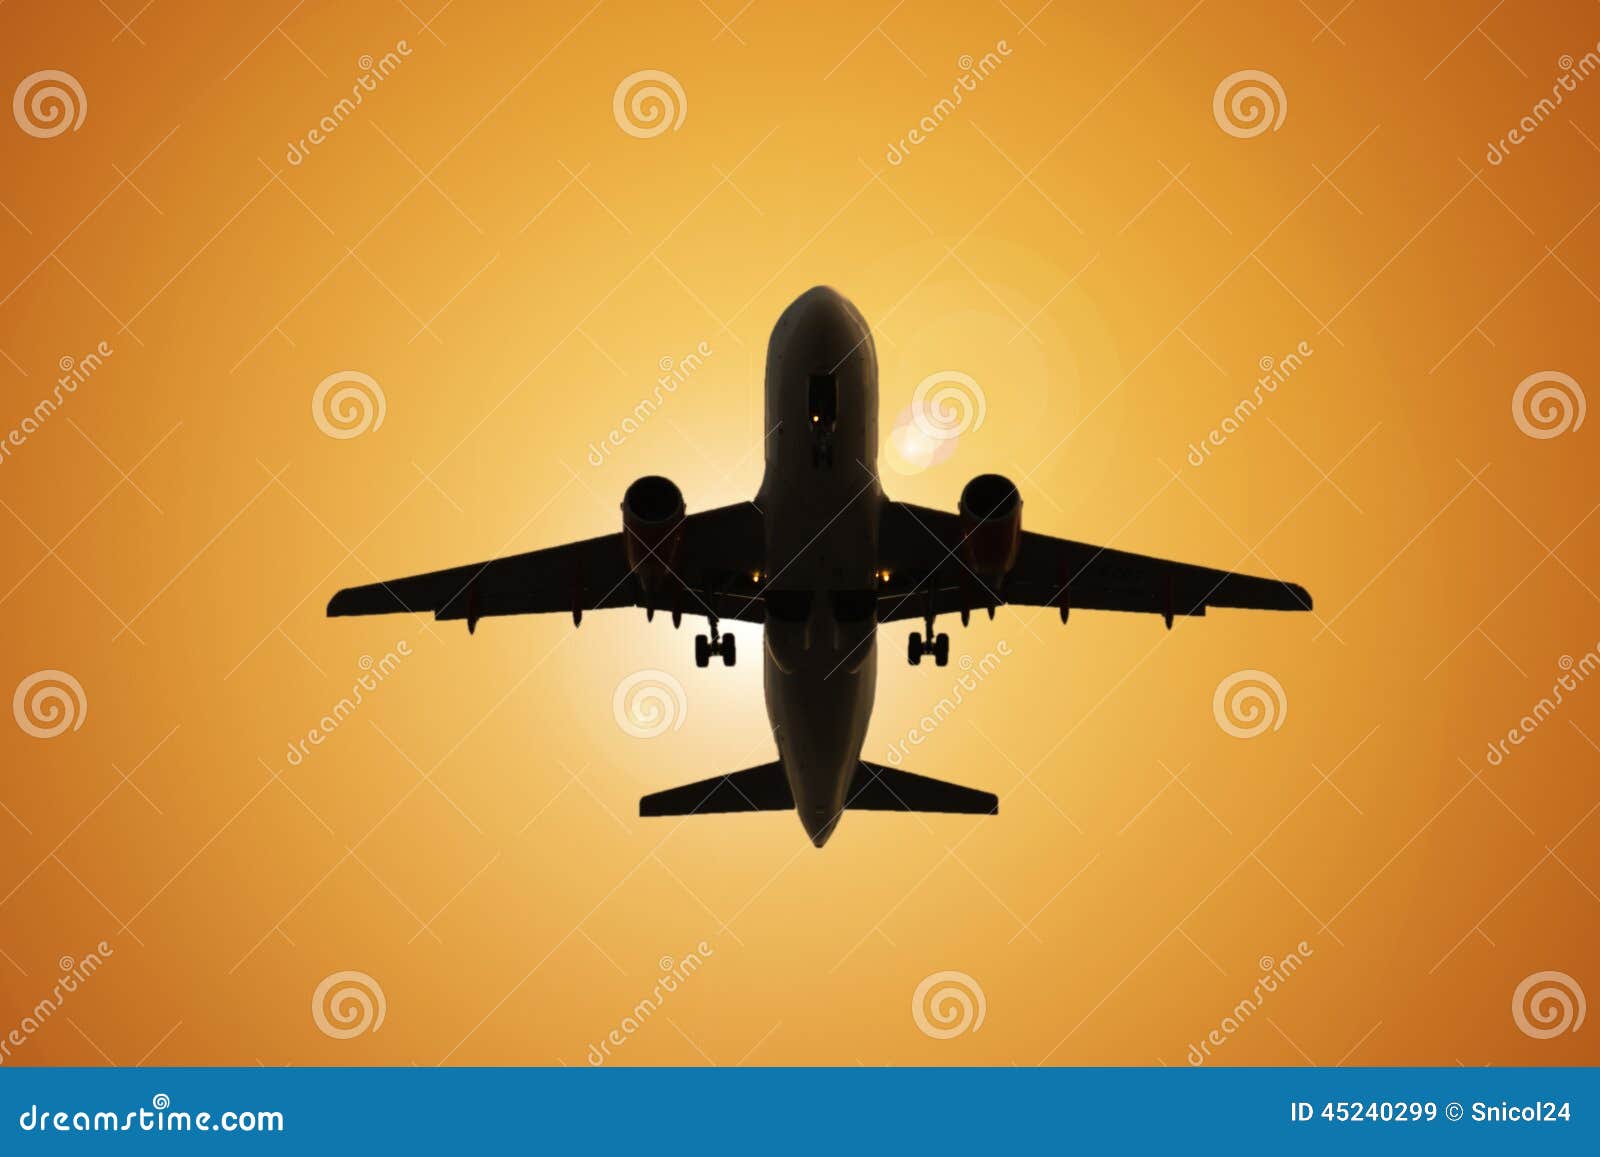 air travel airplane